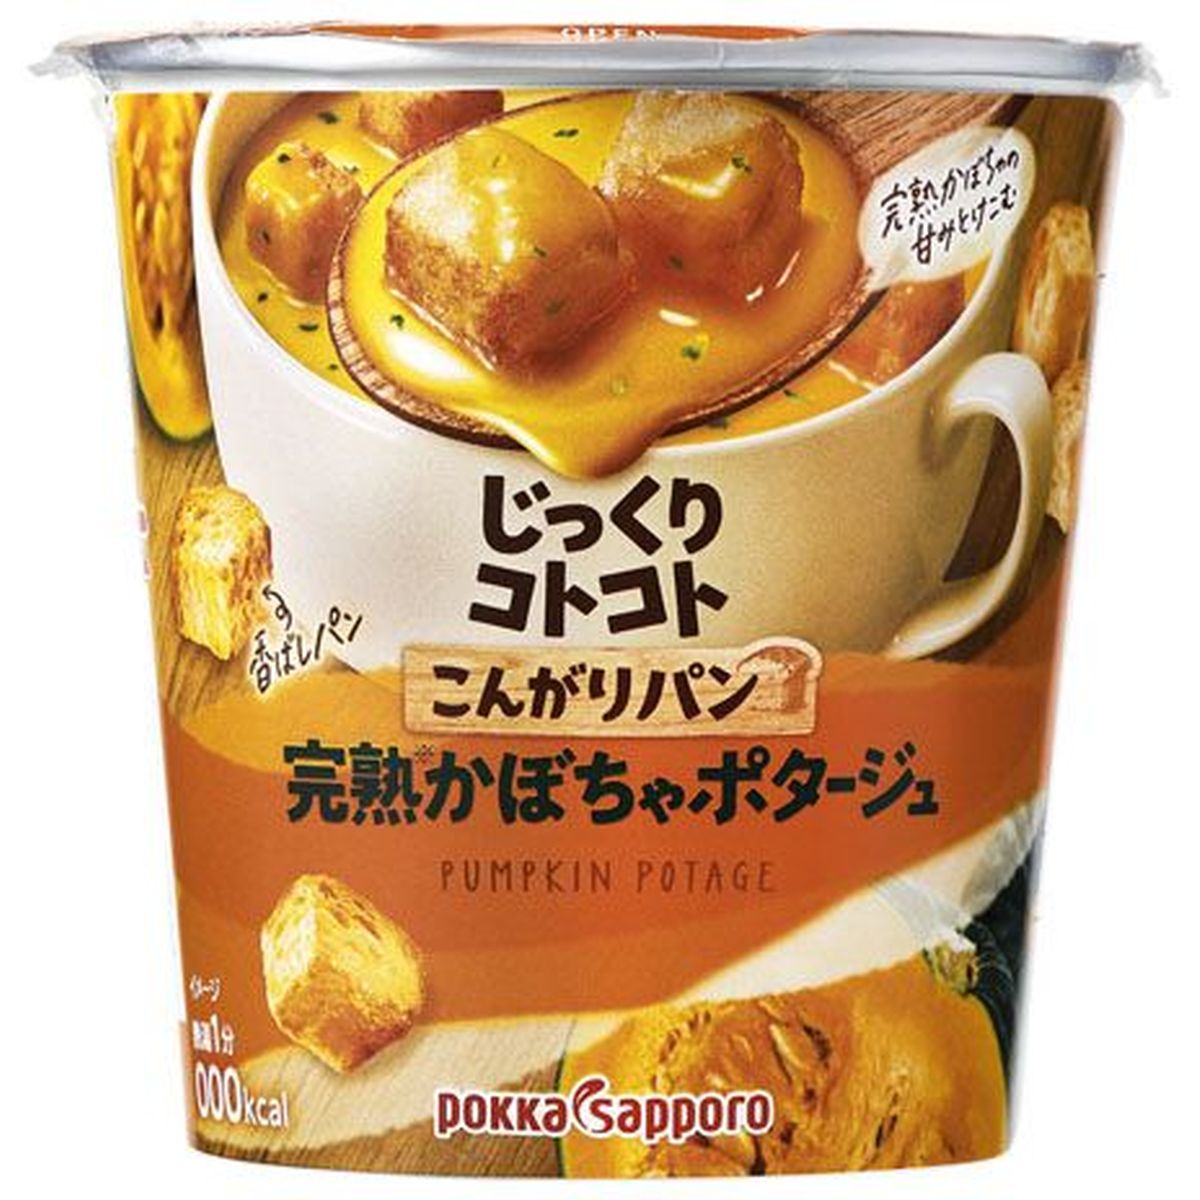 【6個入リ】ポッカサッポロ コンガリパン完熟カボチャ カップ 34.3g